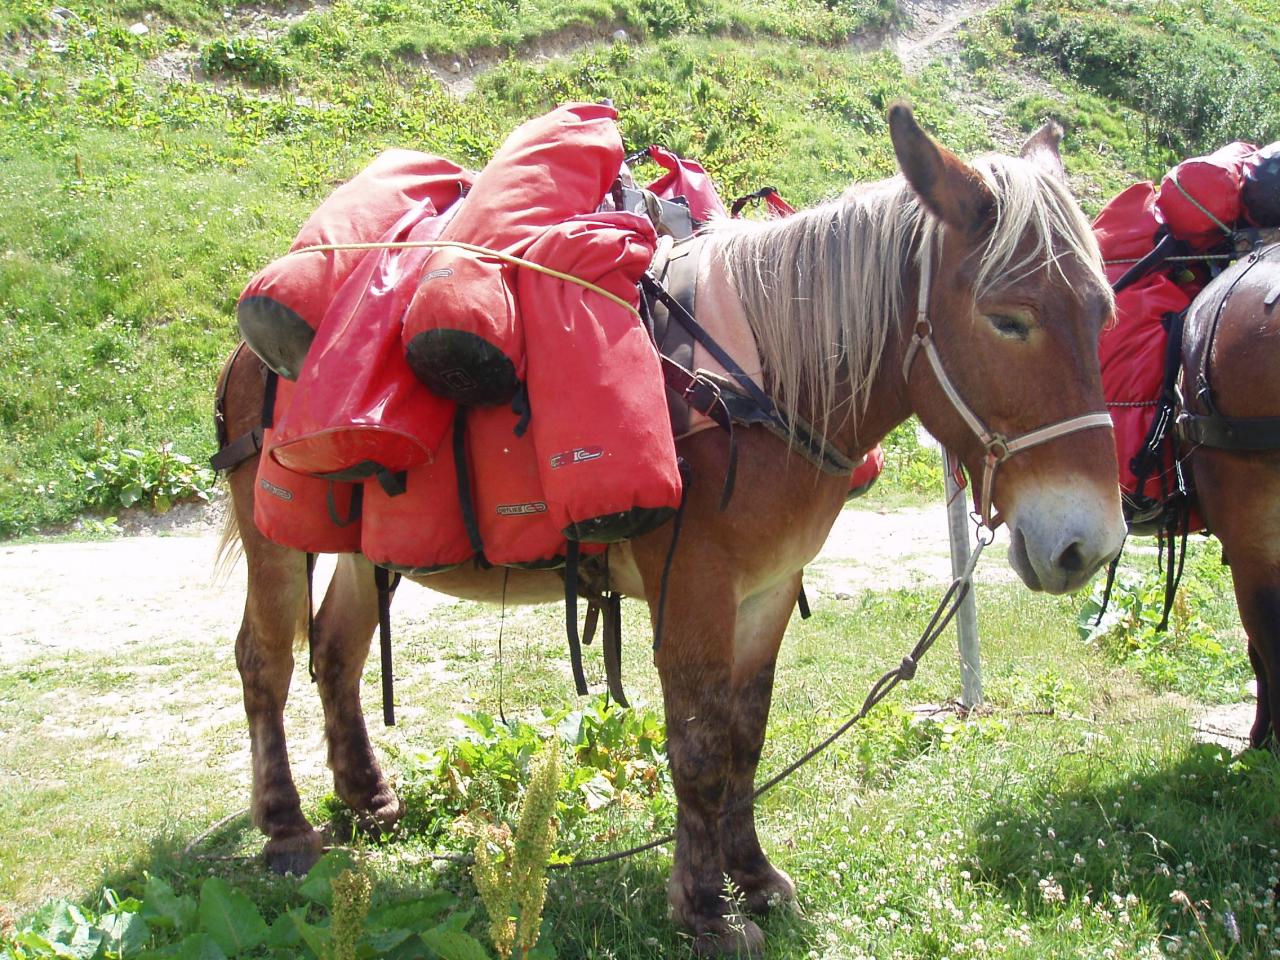 Notre mule, avec nos sacs (pas plus de 7 kgs chacun!)